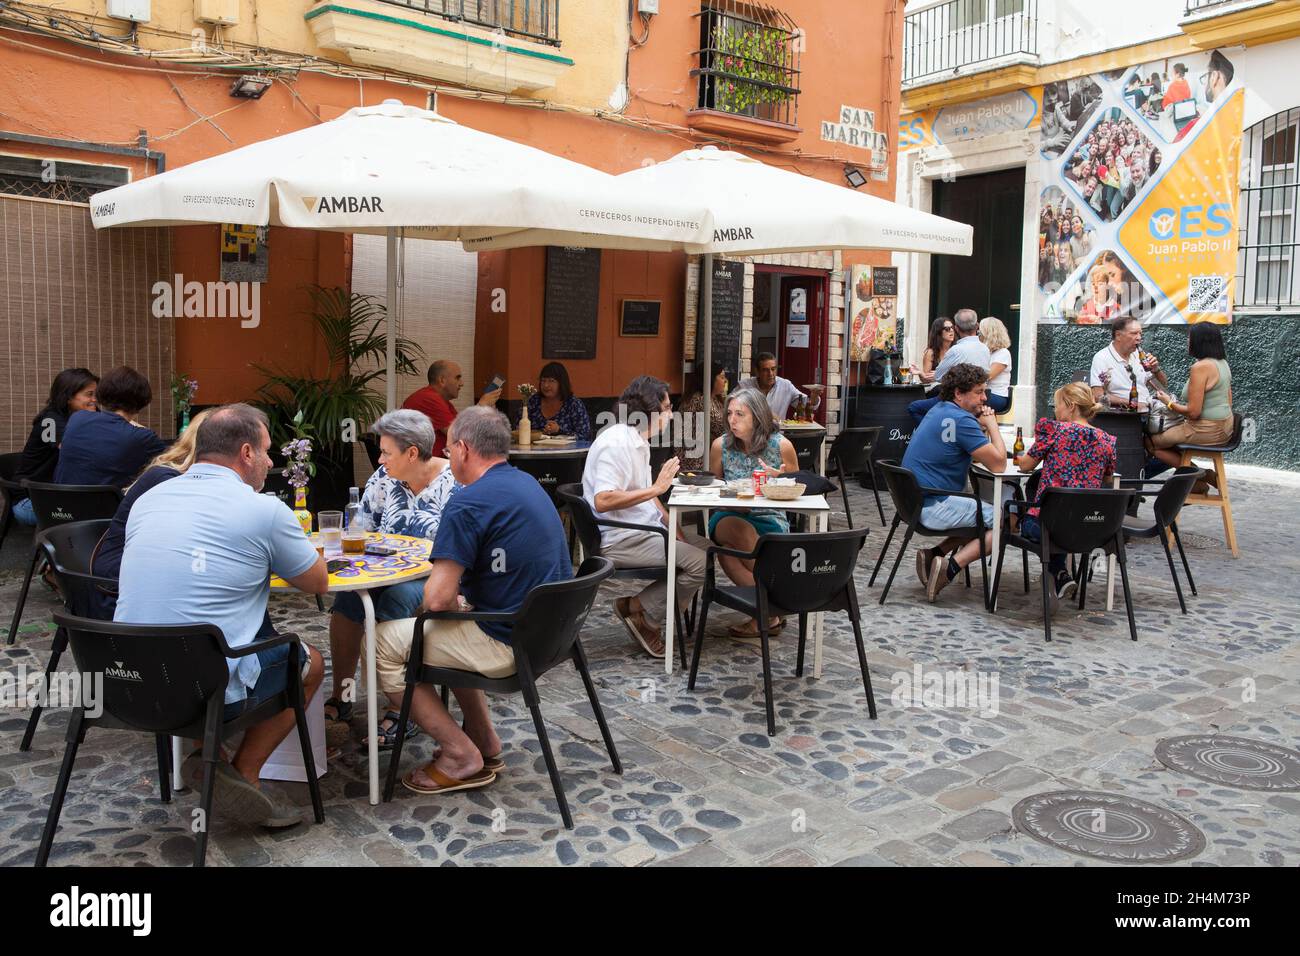 Taberna Baco tapas bar & restaurant in Cadiz Stock Photo